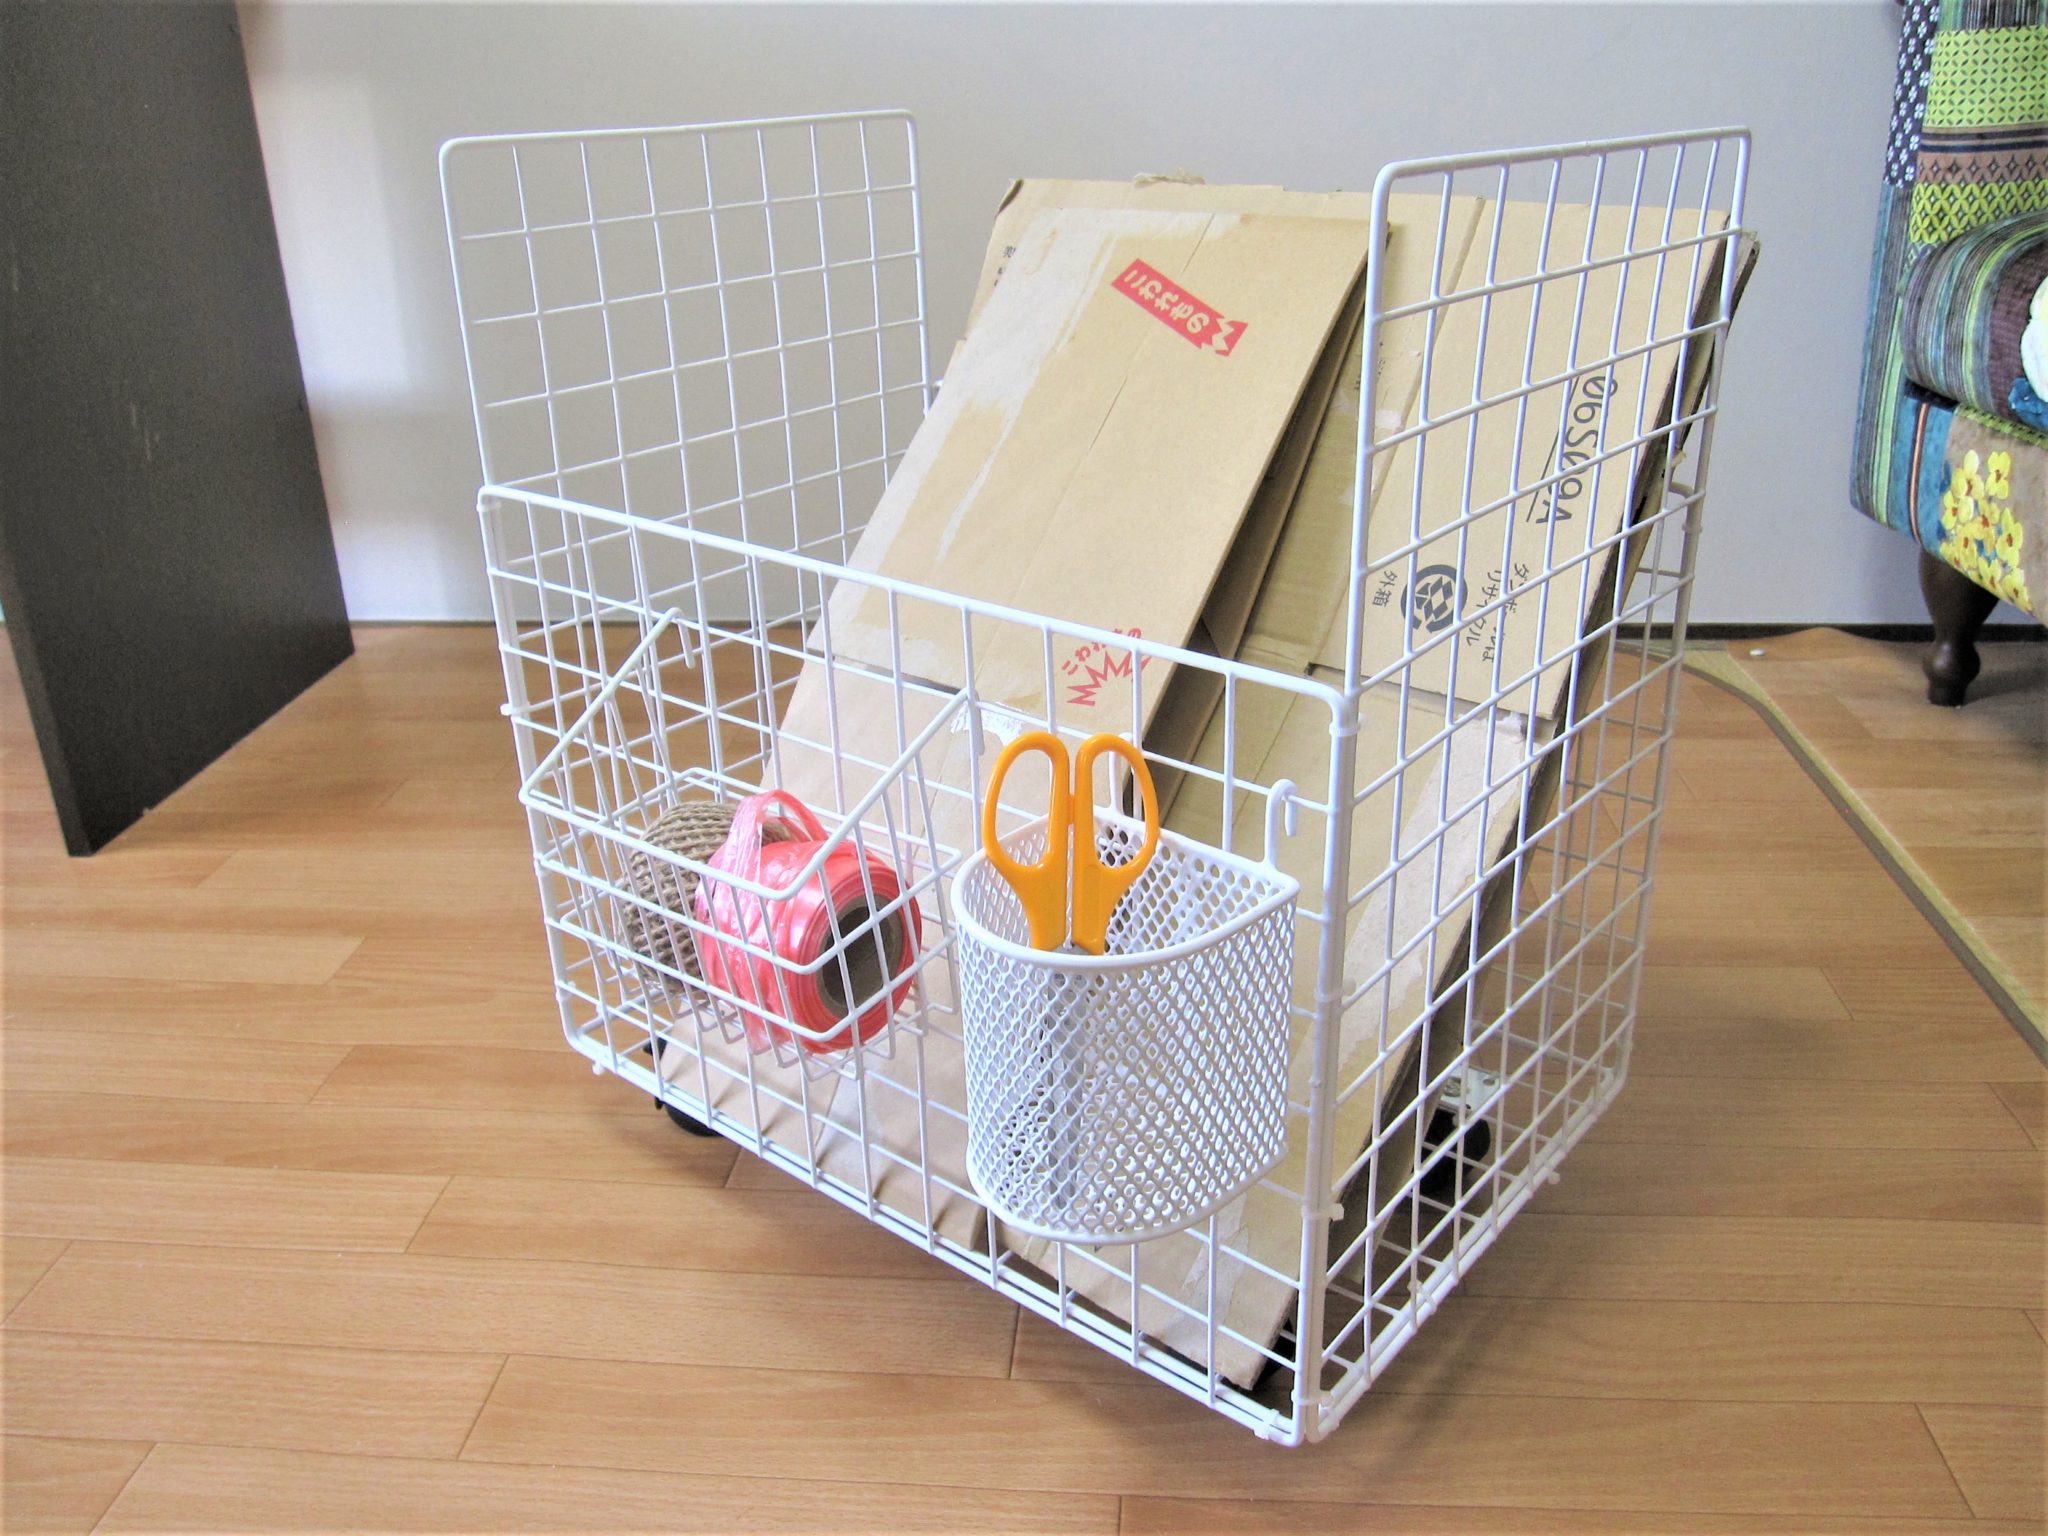 【簡単DIY】100均のワイヤーネットを使って「キャスター付き収納BOX」を作る方法 – スマeマガジン